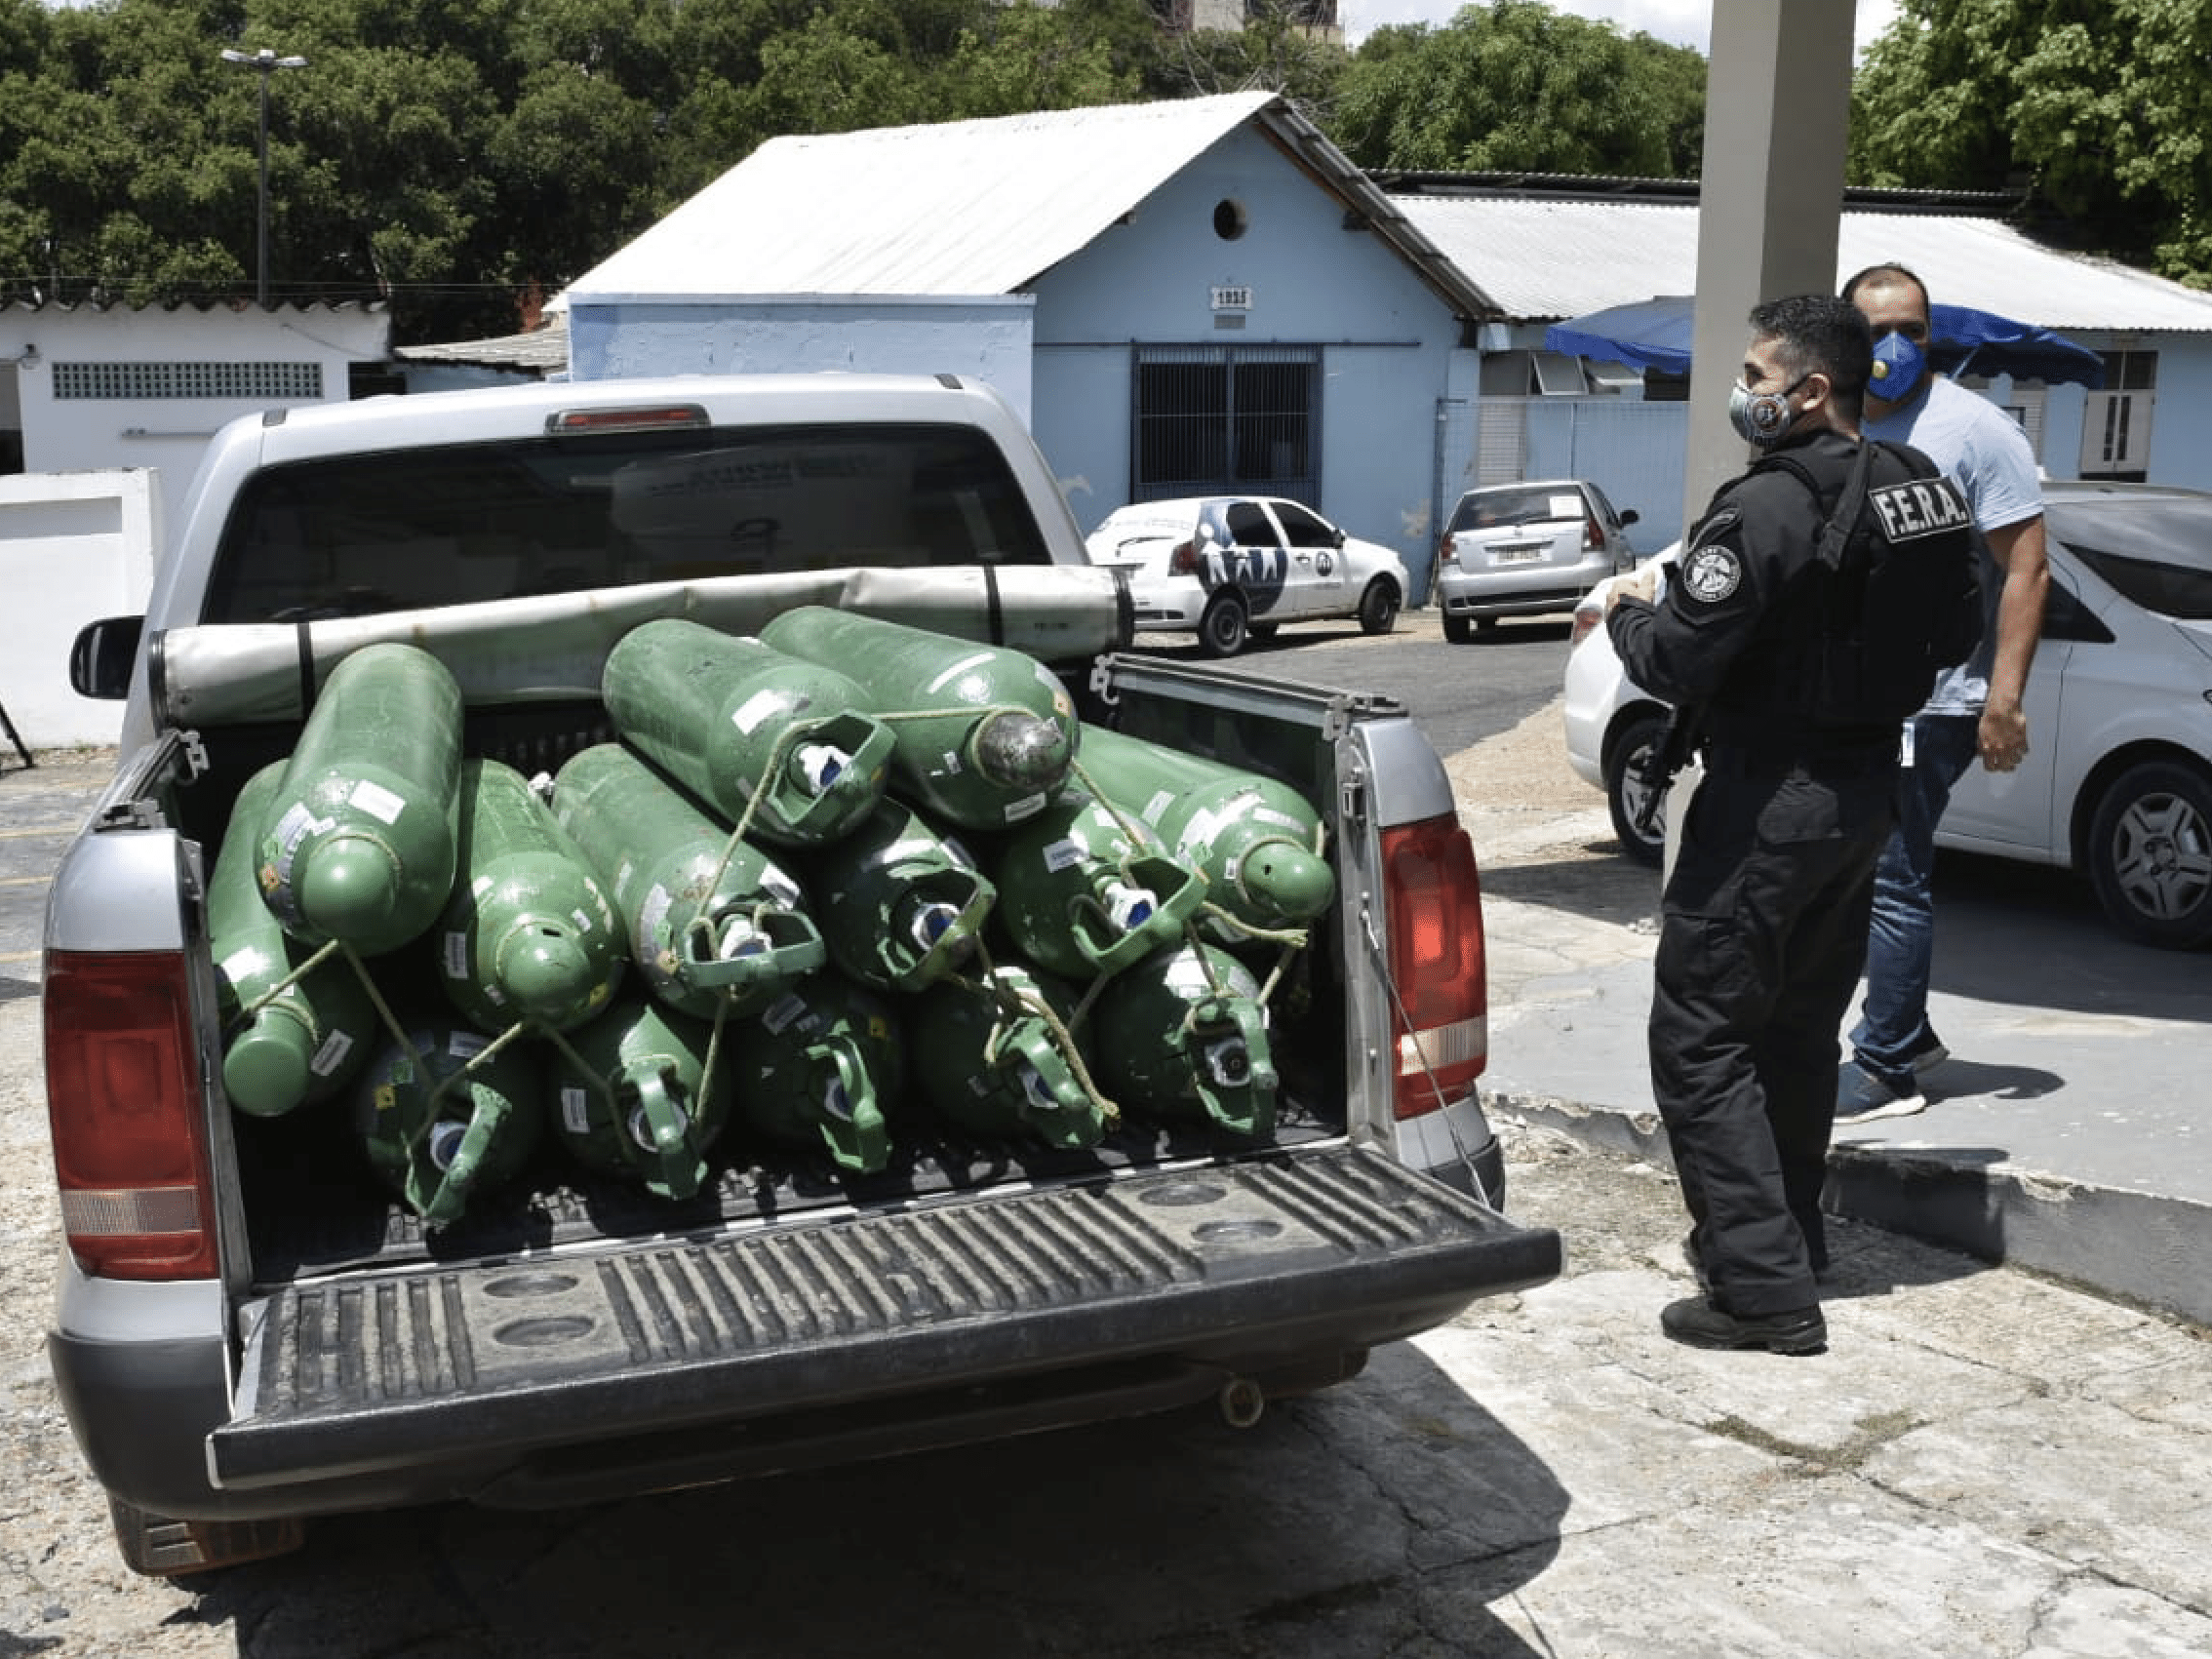 Polícia Civil de Manaus acabou de apreender um caminhão cheio de cilindros  de oxigênio - Perfil News